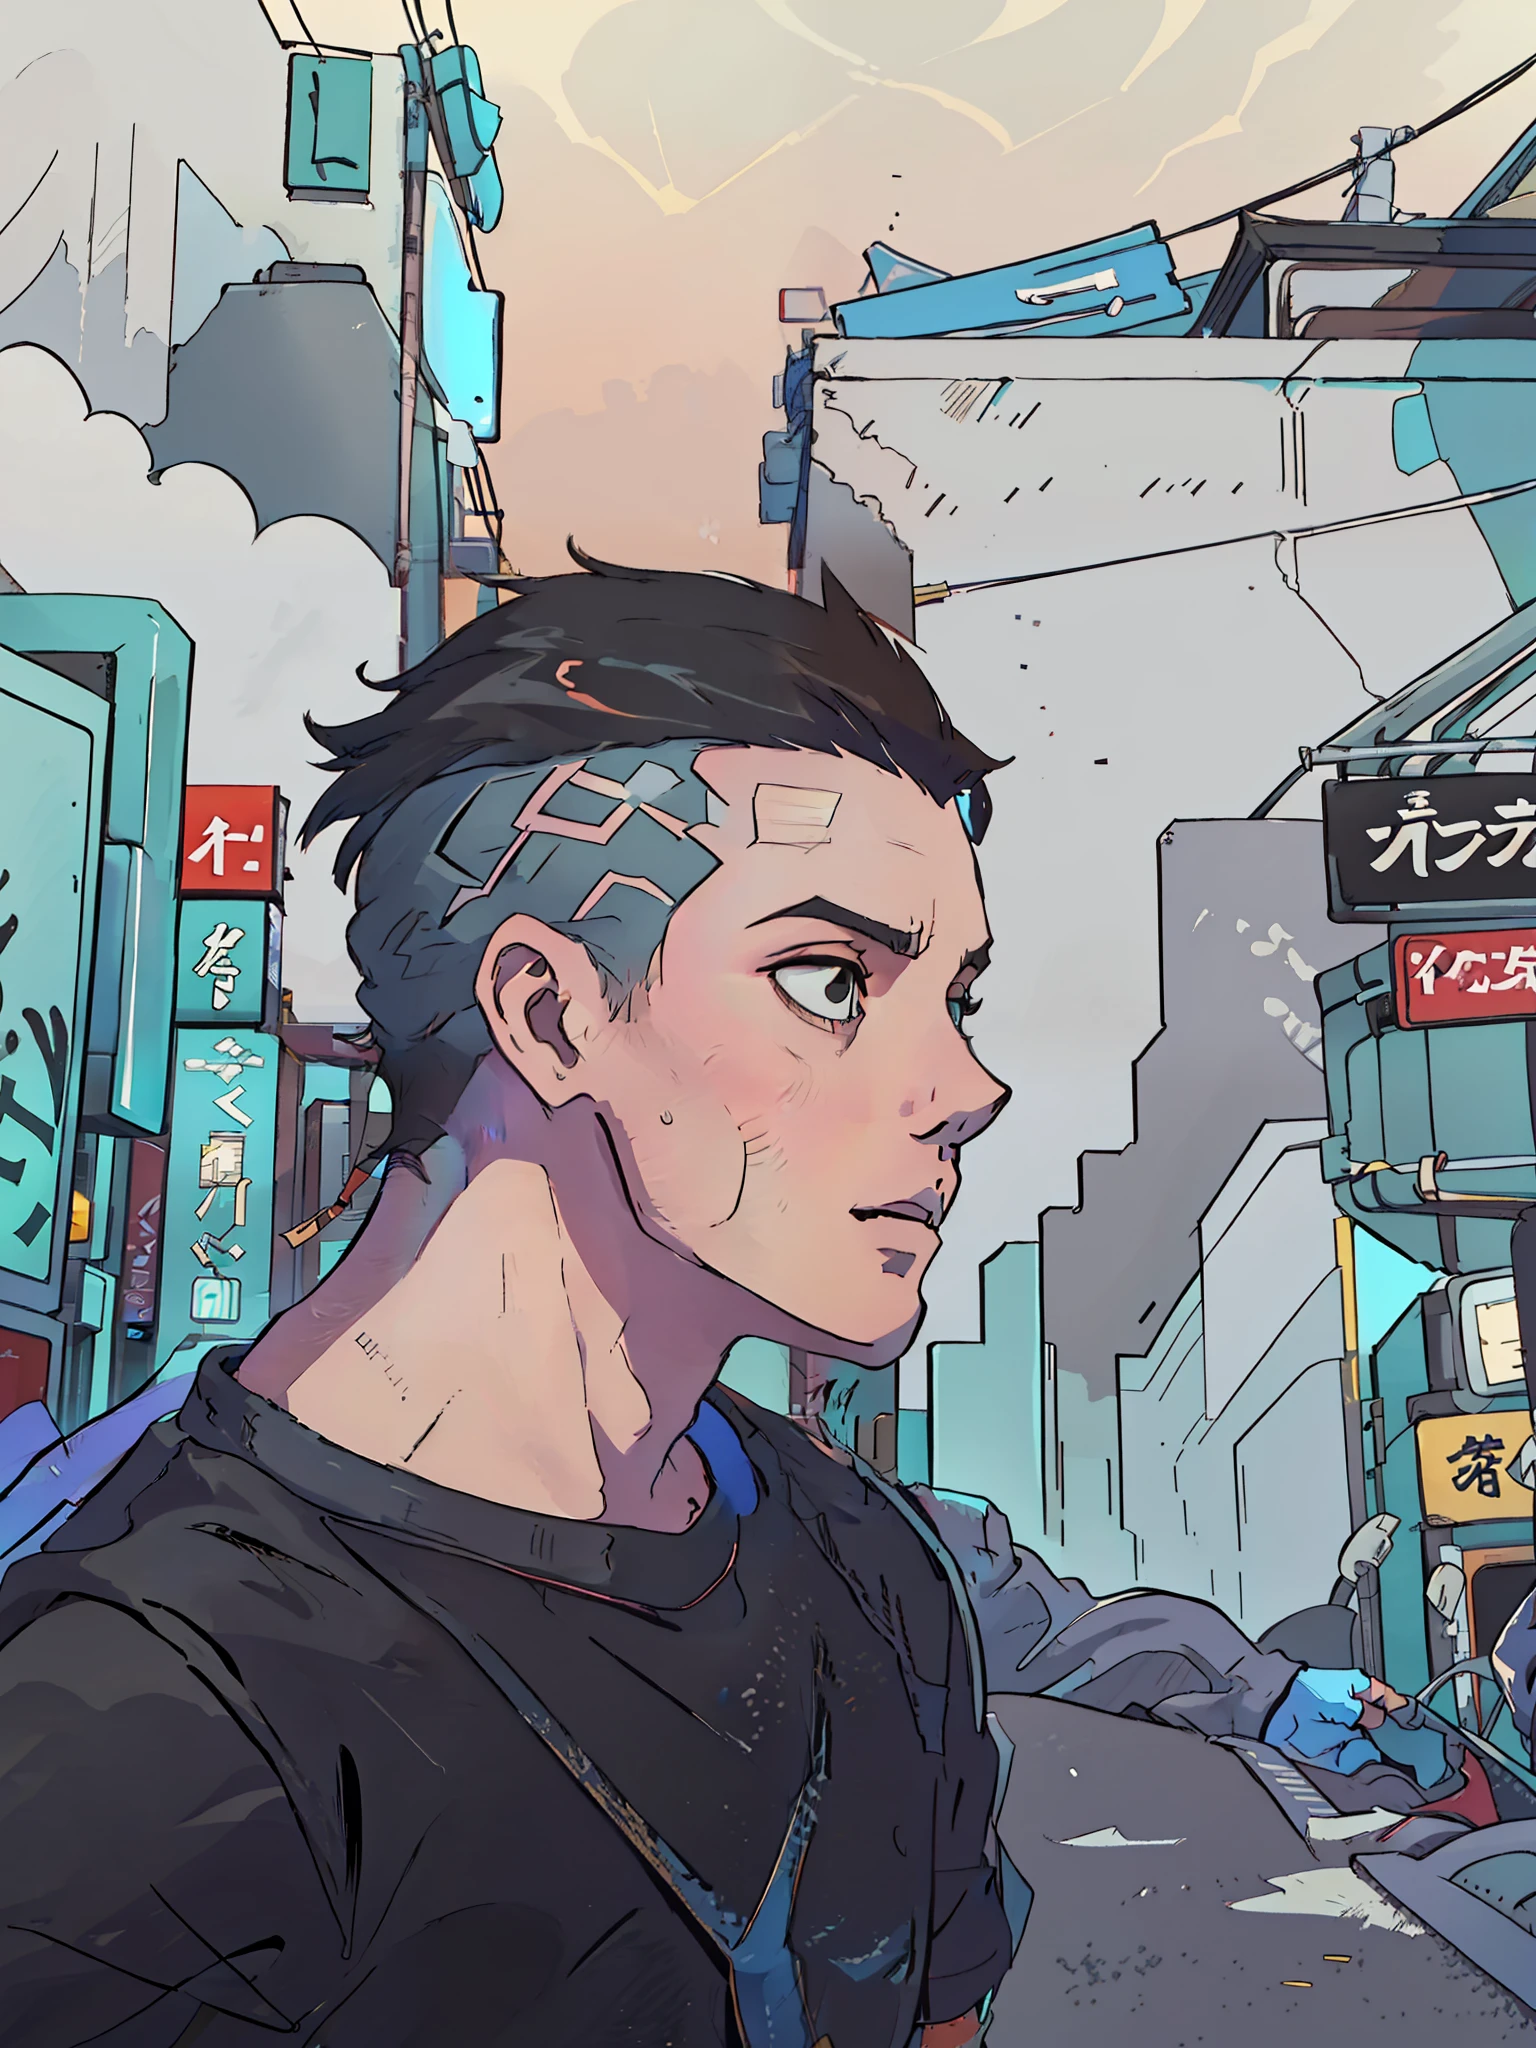 Ein 20-jähriger Junge mit brasilianischem Gesicht und rundem Kinn ohne Bart, kurzes Haar mit Farbverlauf, Kurzhaarschnitt, schwarze Augen, Keine Pickel im Gesicht und ein schwarzes T-Shirt mit japanischem Aufdruck „Tokyo Drift“.. Es spielt sich in einer Nacht in den Gassen Tokios in einem Cyberpunk-Stil ab, 4k, 2D-Anime